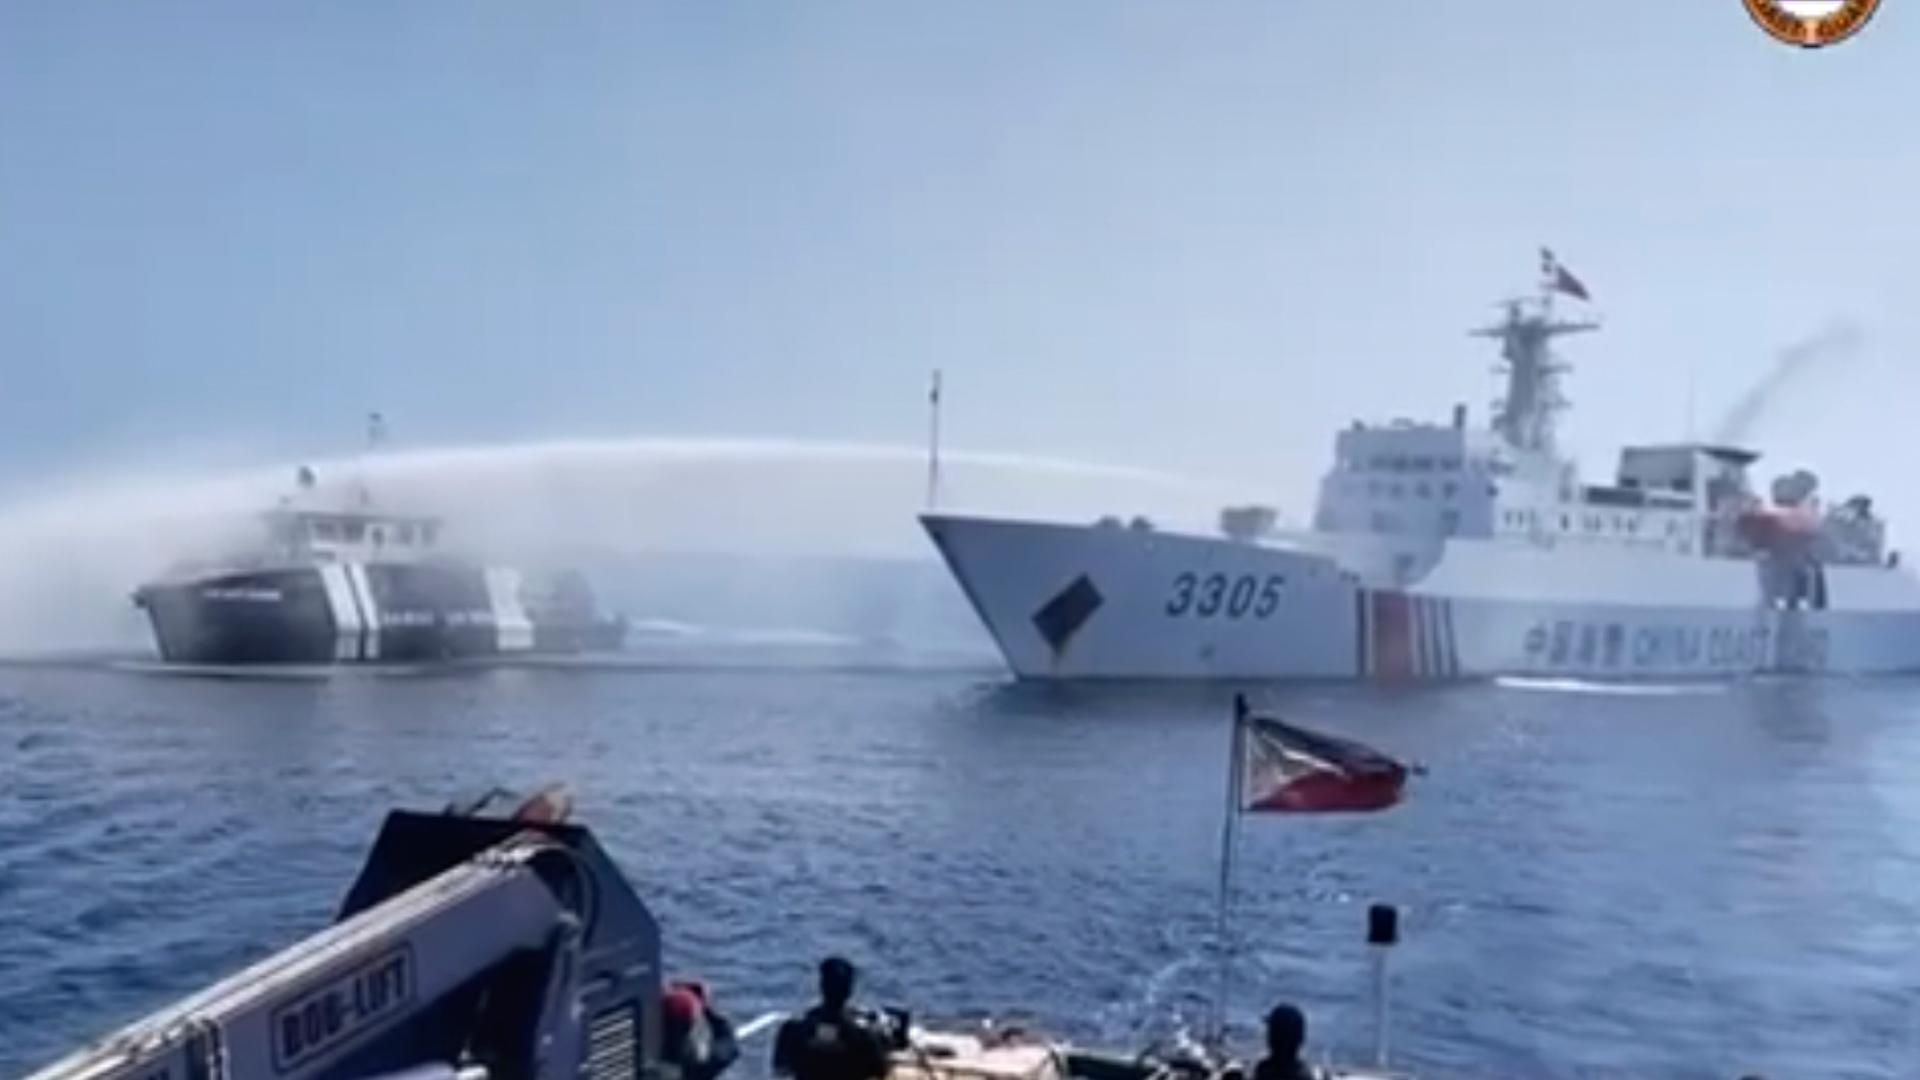 Auf diesem Bild aus einem von der philippinischen Küstenwache zur Verfügung gestellten Video schießt ein Schiff mit einem Wasserwerfer auf ein anderes Schiff.